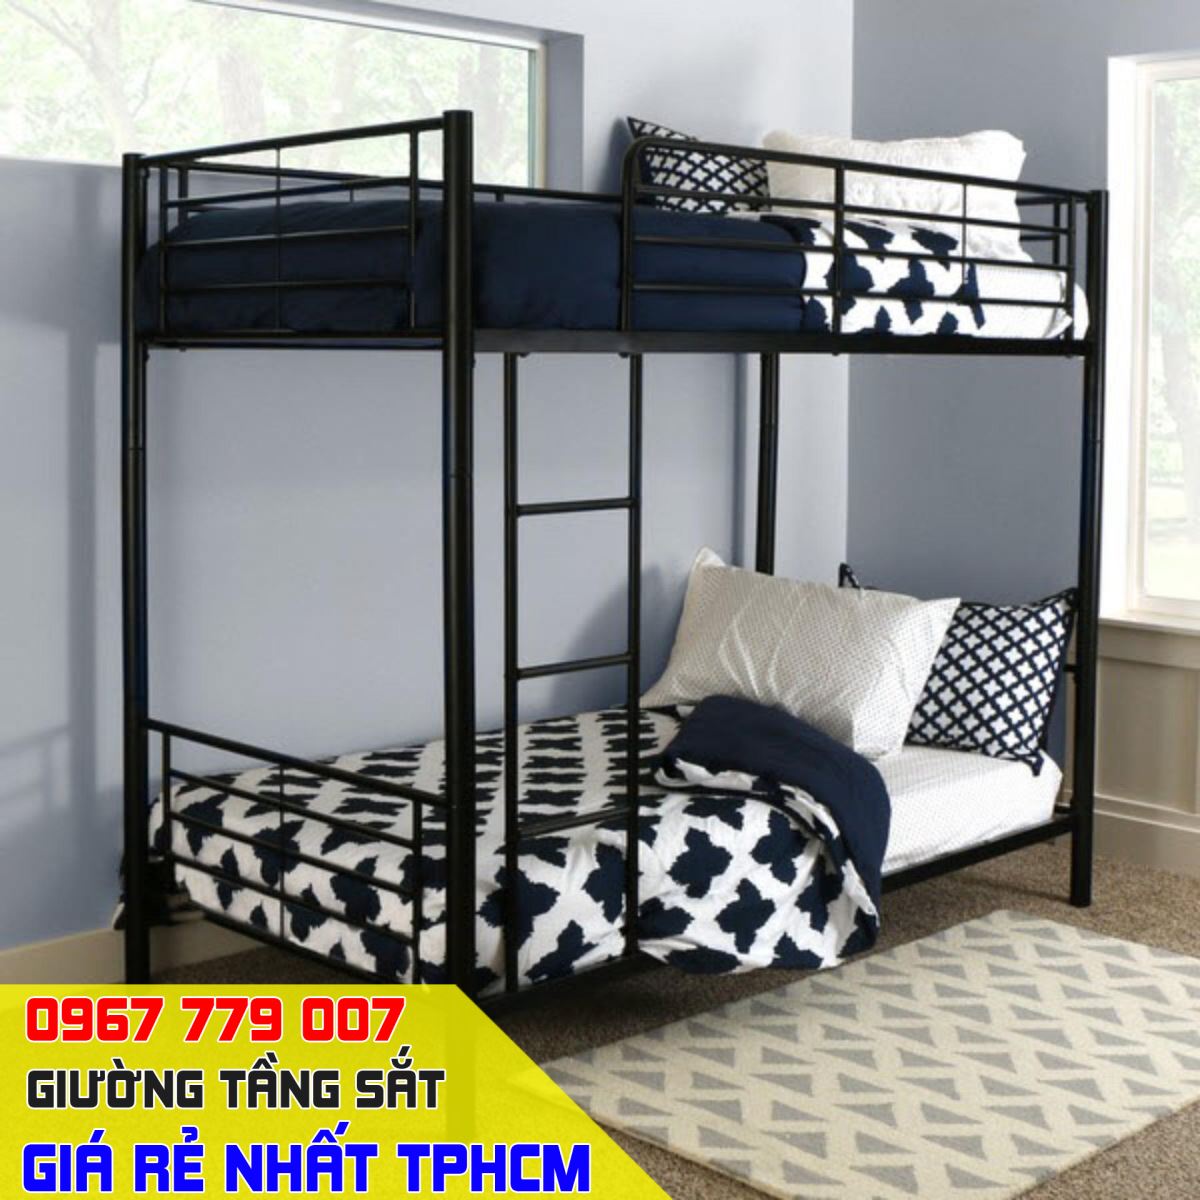 giường 2 tầng sắt giá rẻ tại tphcm